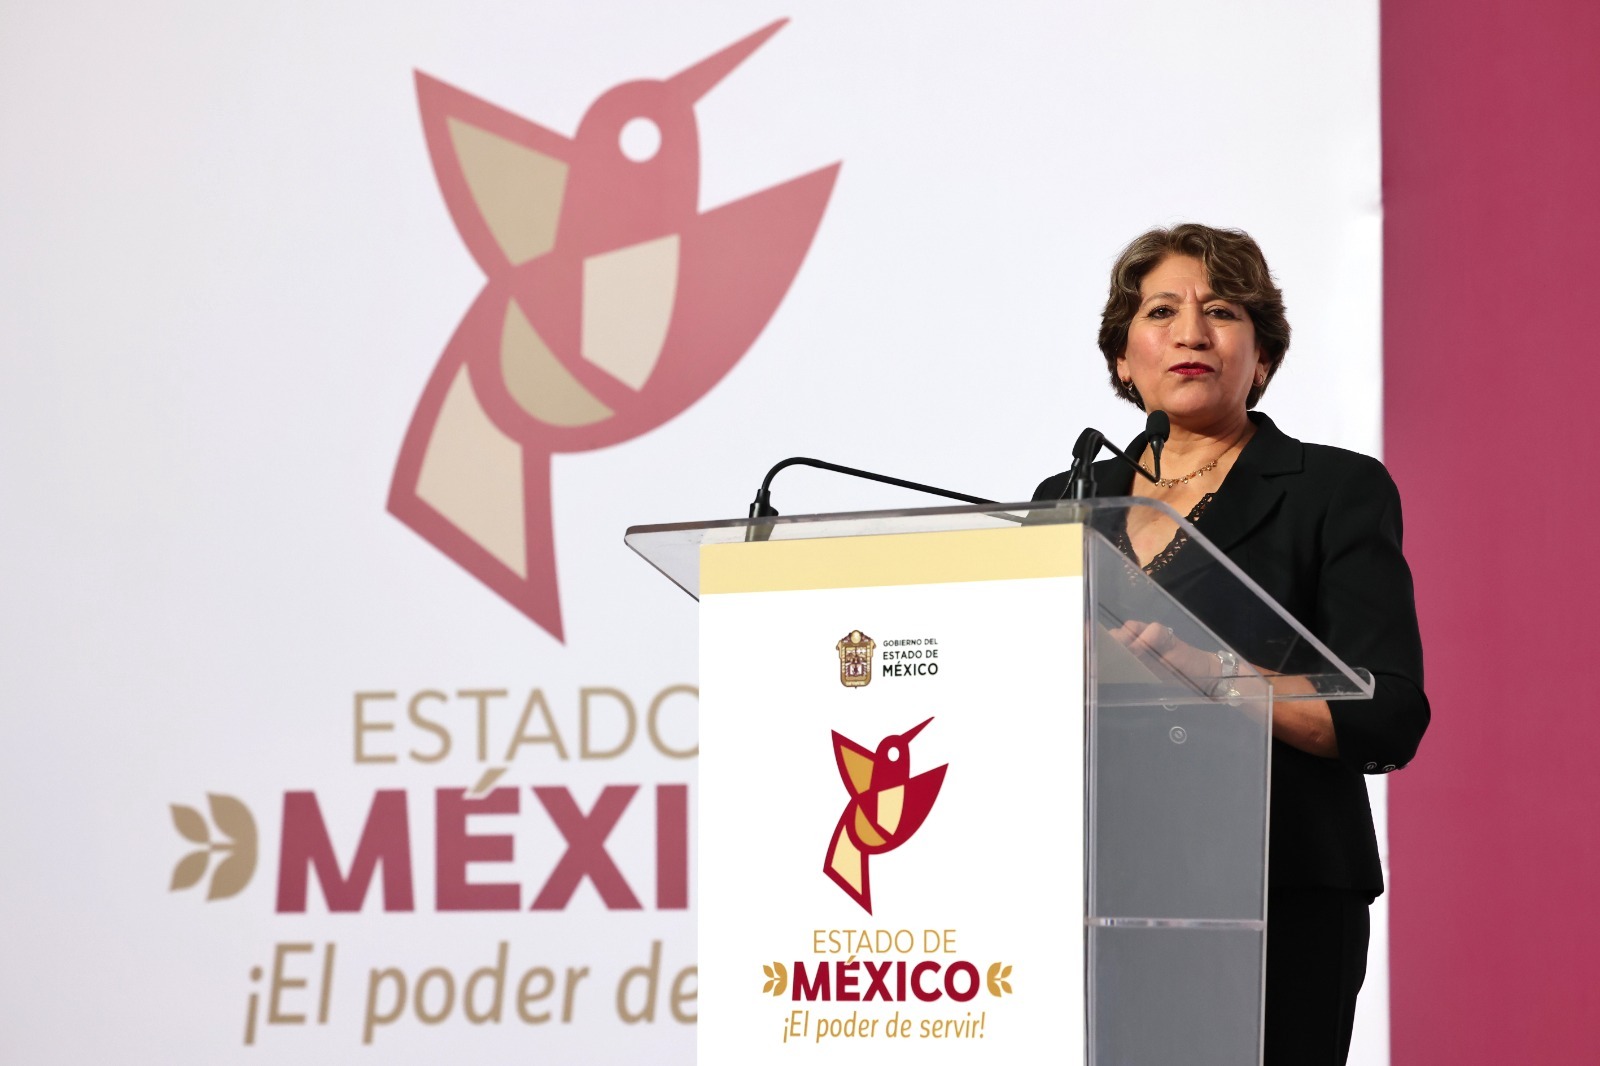 El Gobierno de Delfina Gómez Álvarez ha creado estrategias para fomentar la inversión privada y el desarrollo económico de la entidad.